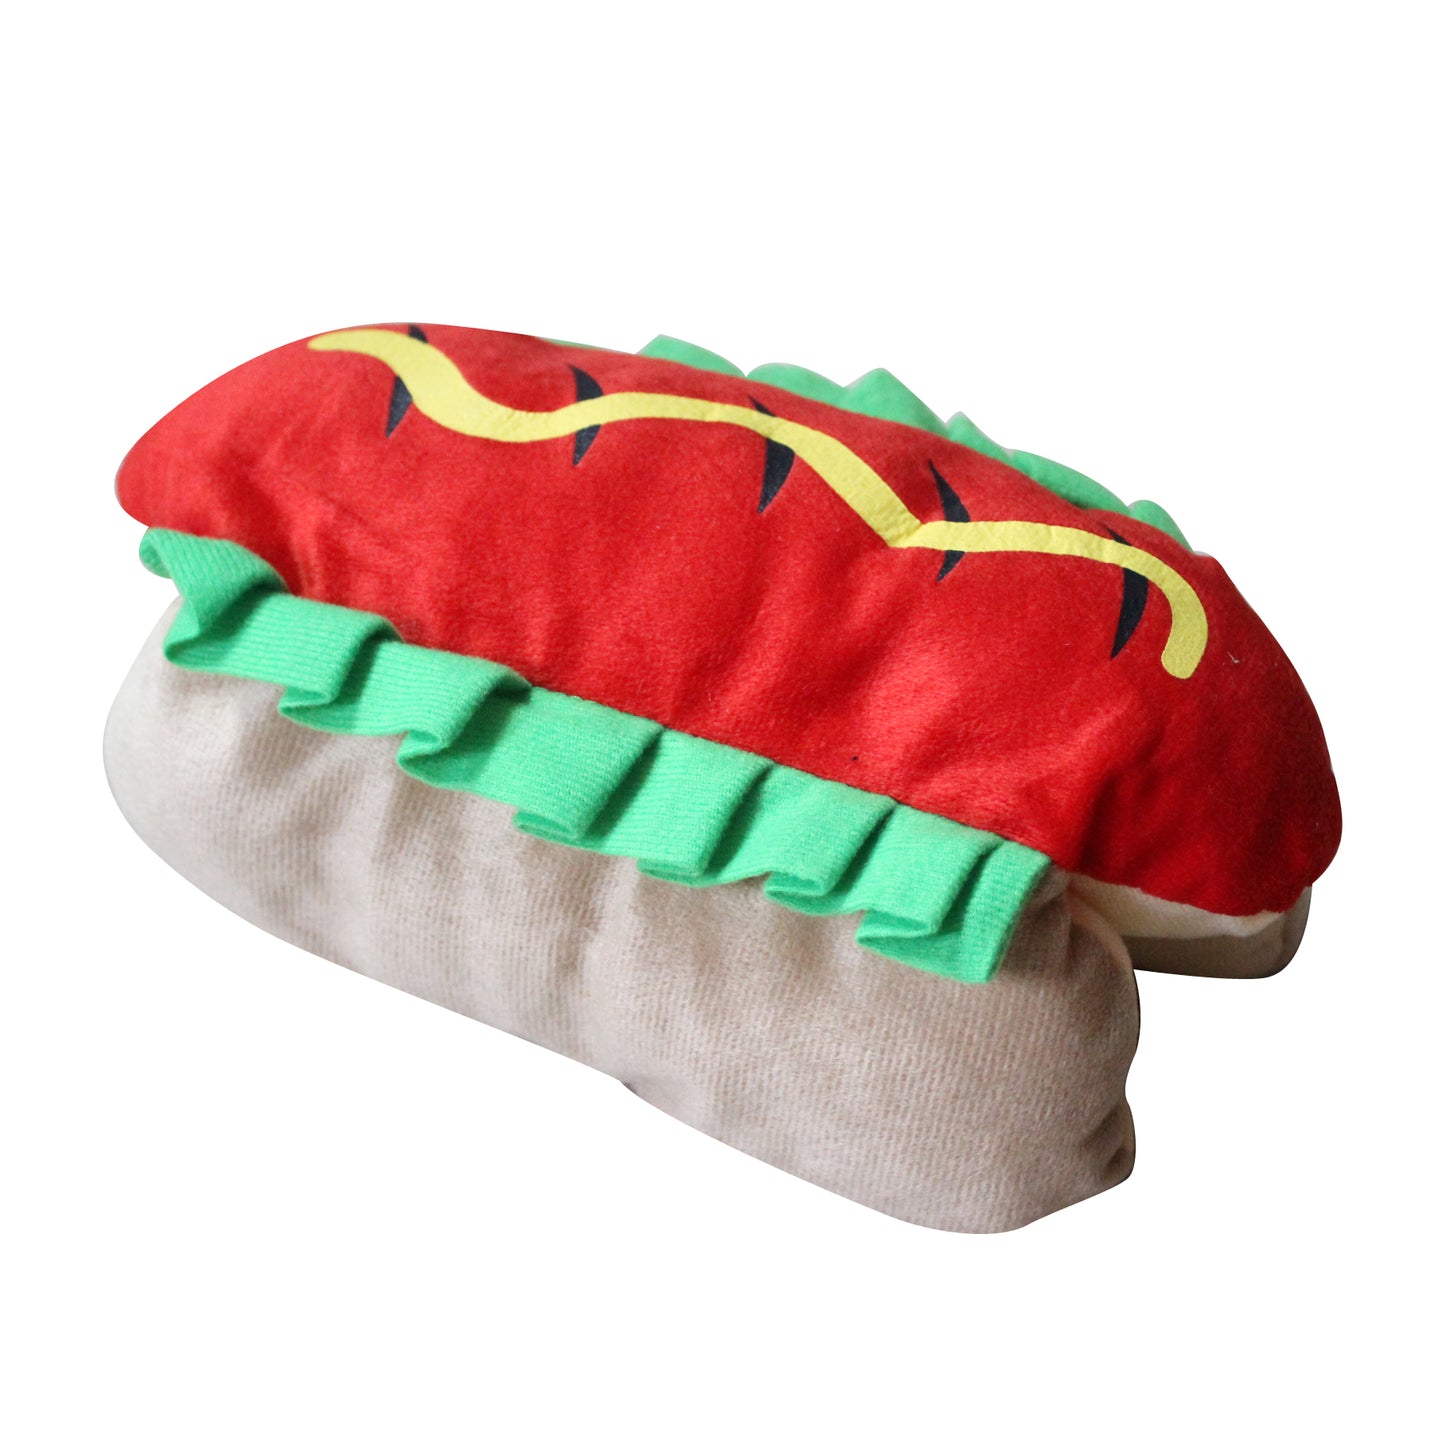 Bread Hot Dog Transformation